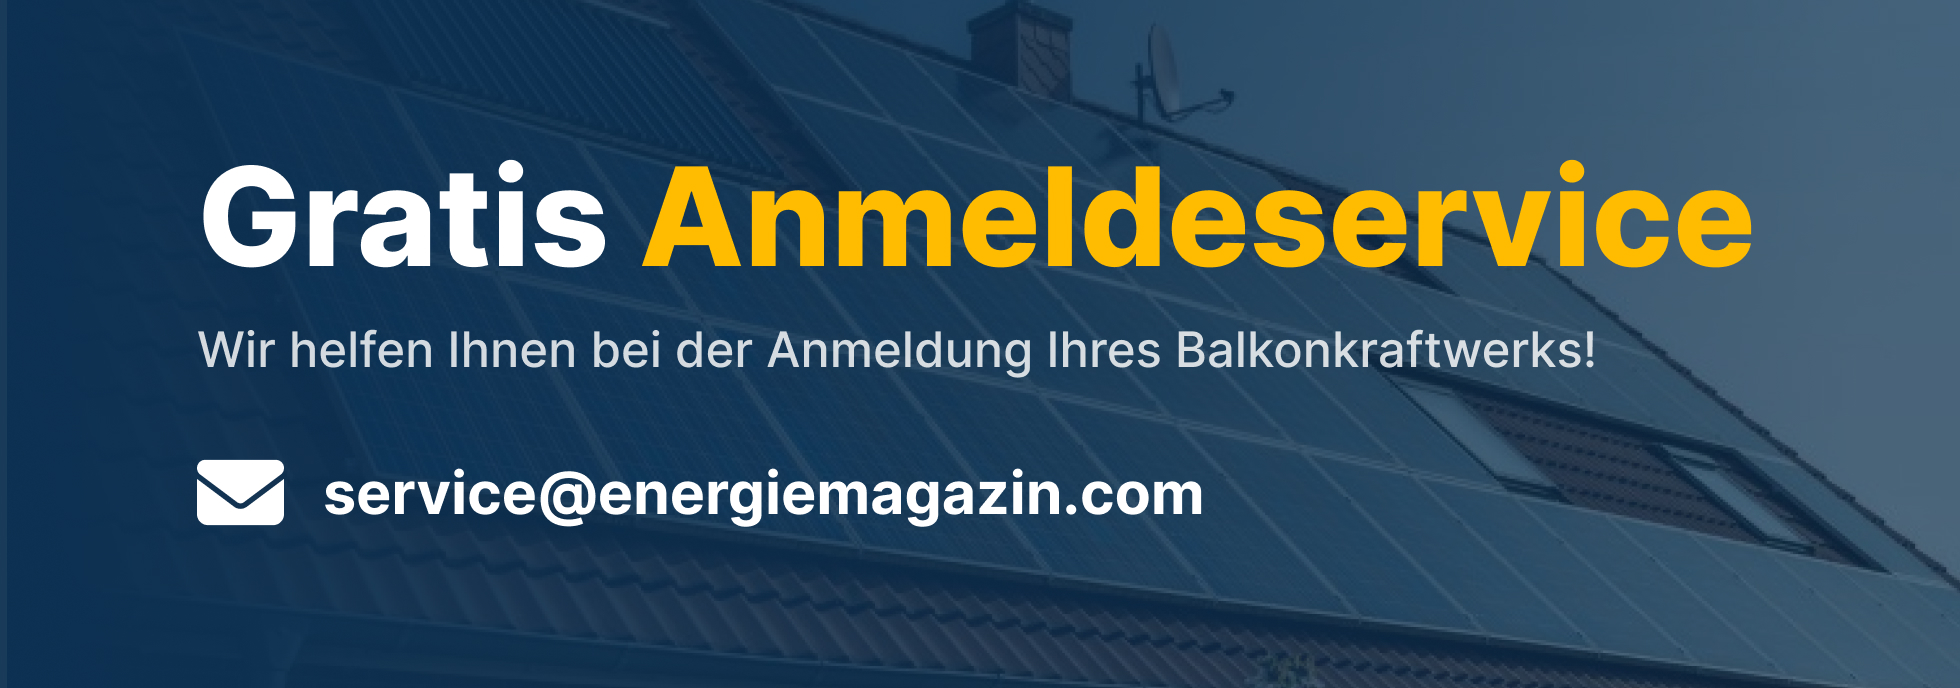 Balkonkraftwerk Anmeldeservice vom EnergieMagazin